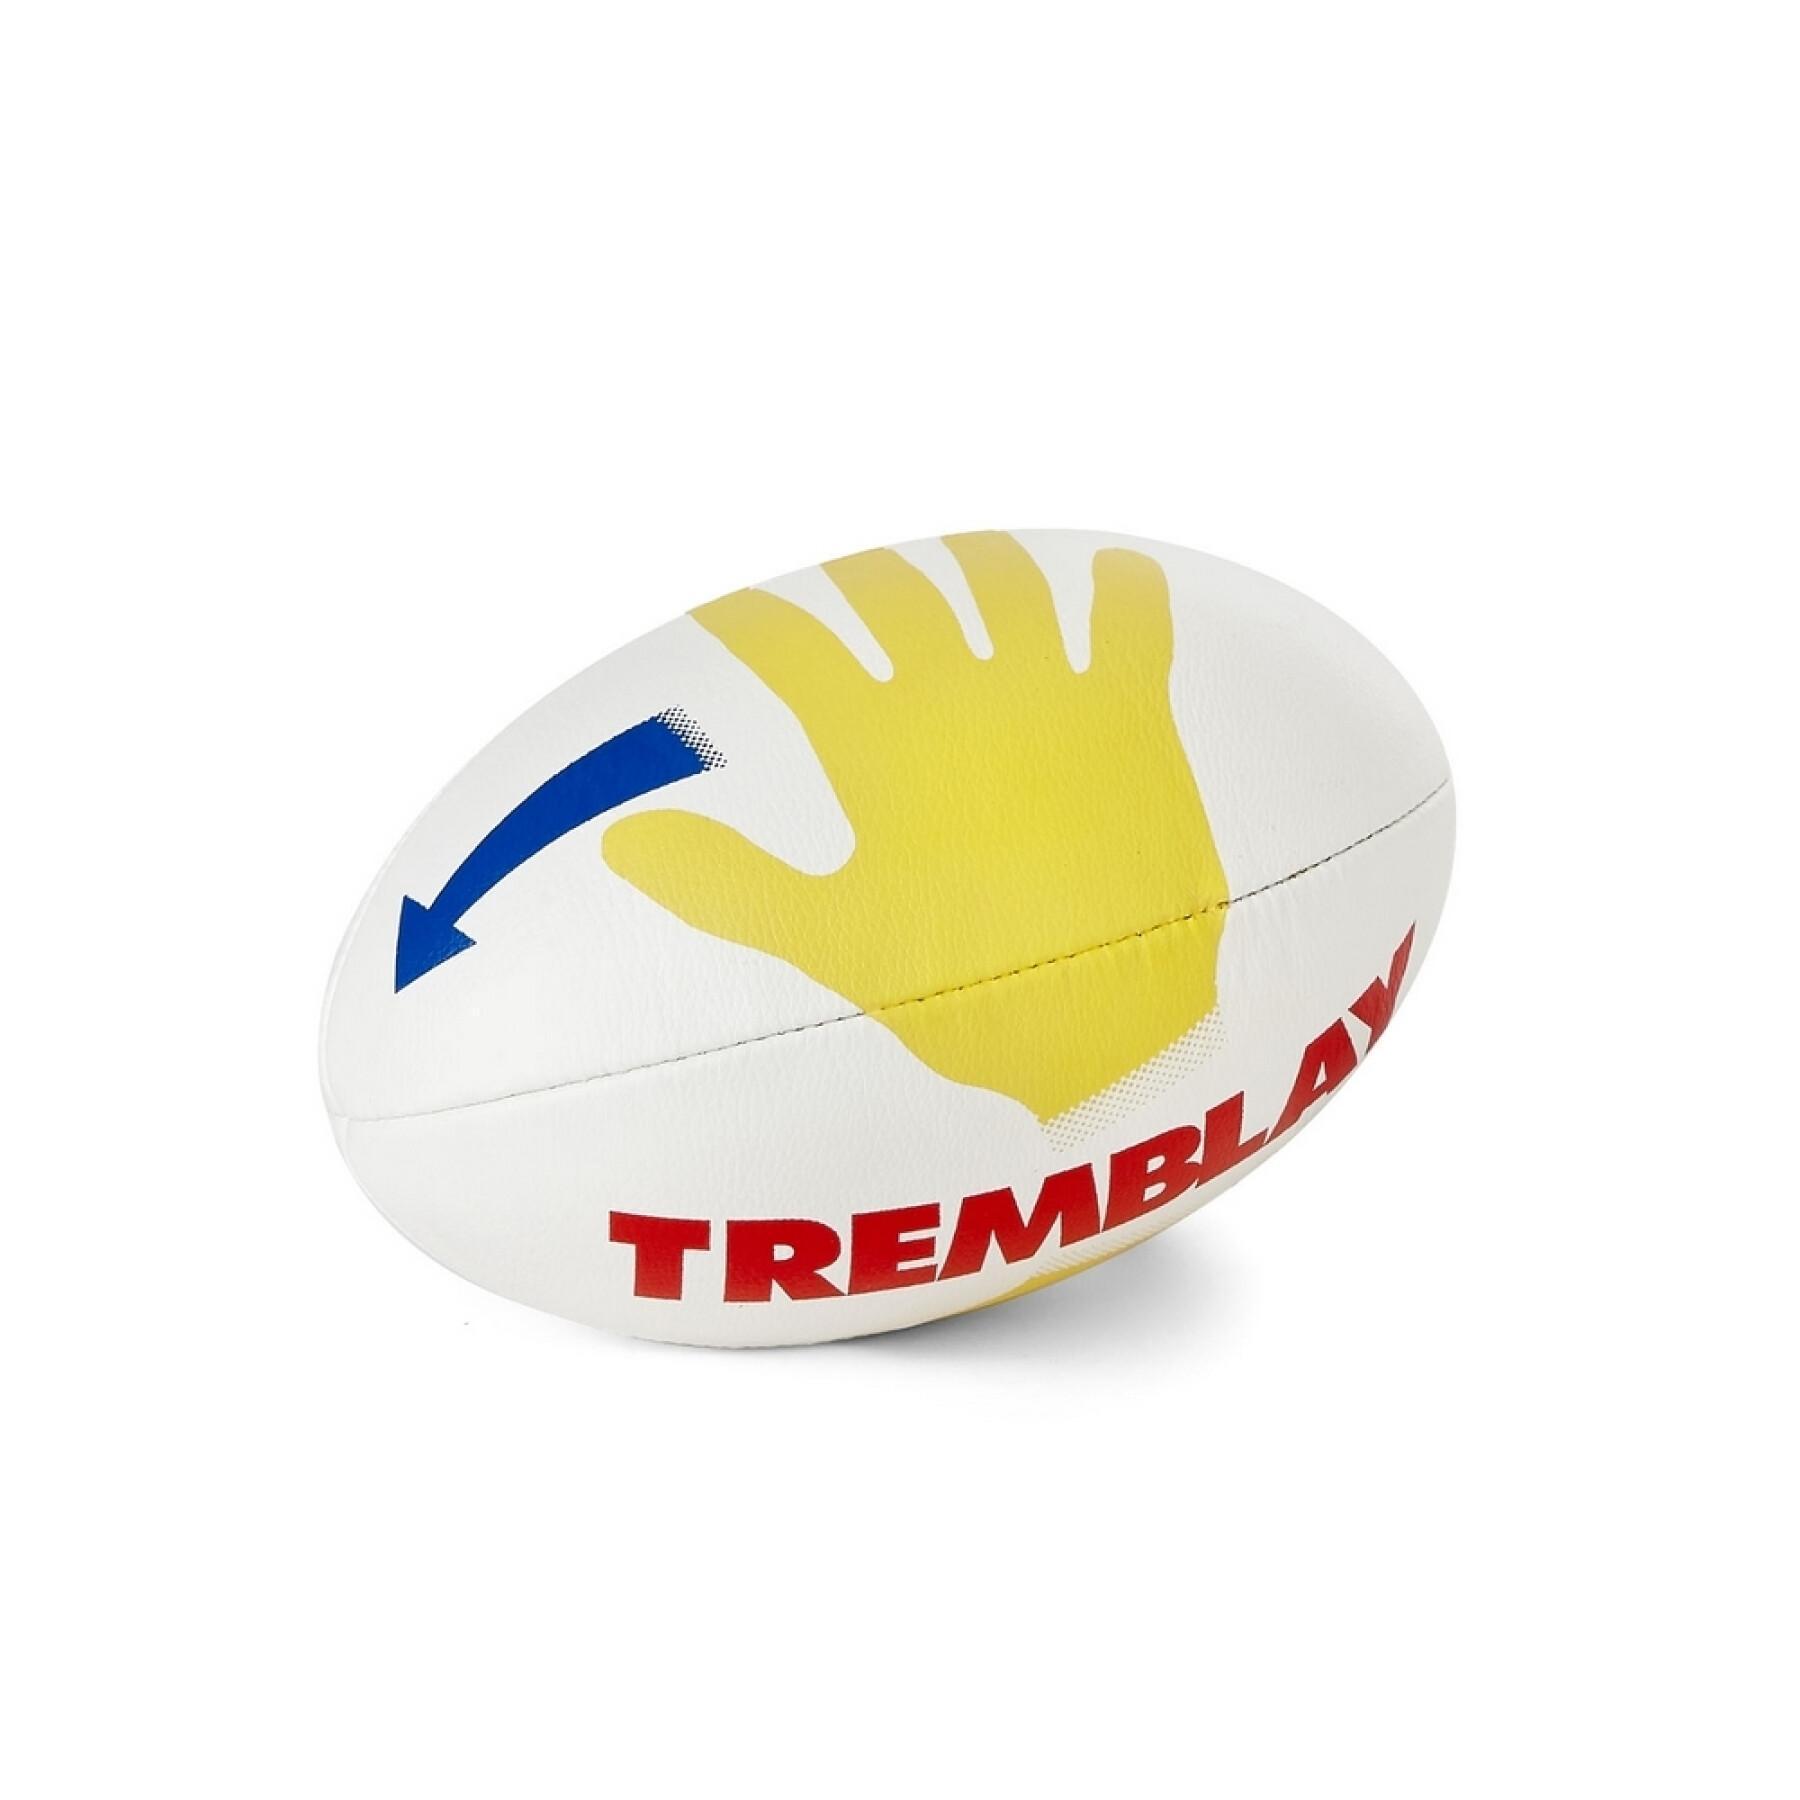 Tremblay-skolans rugbyboll